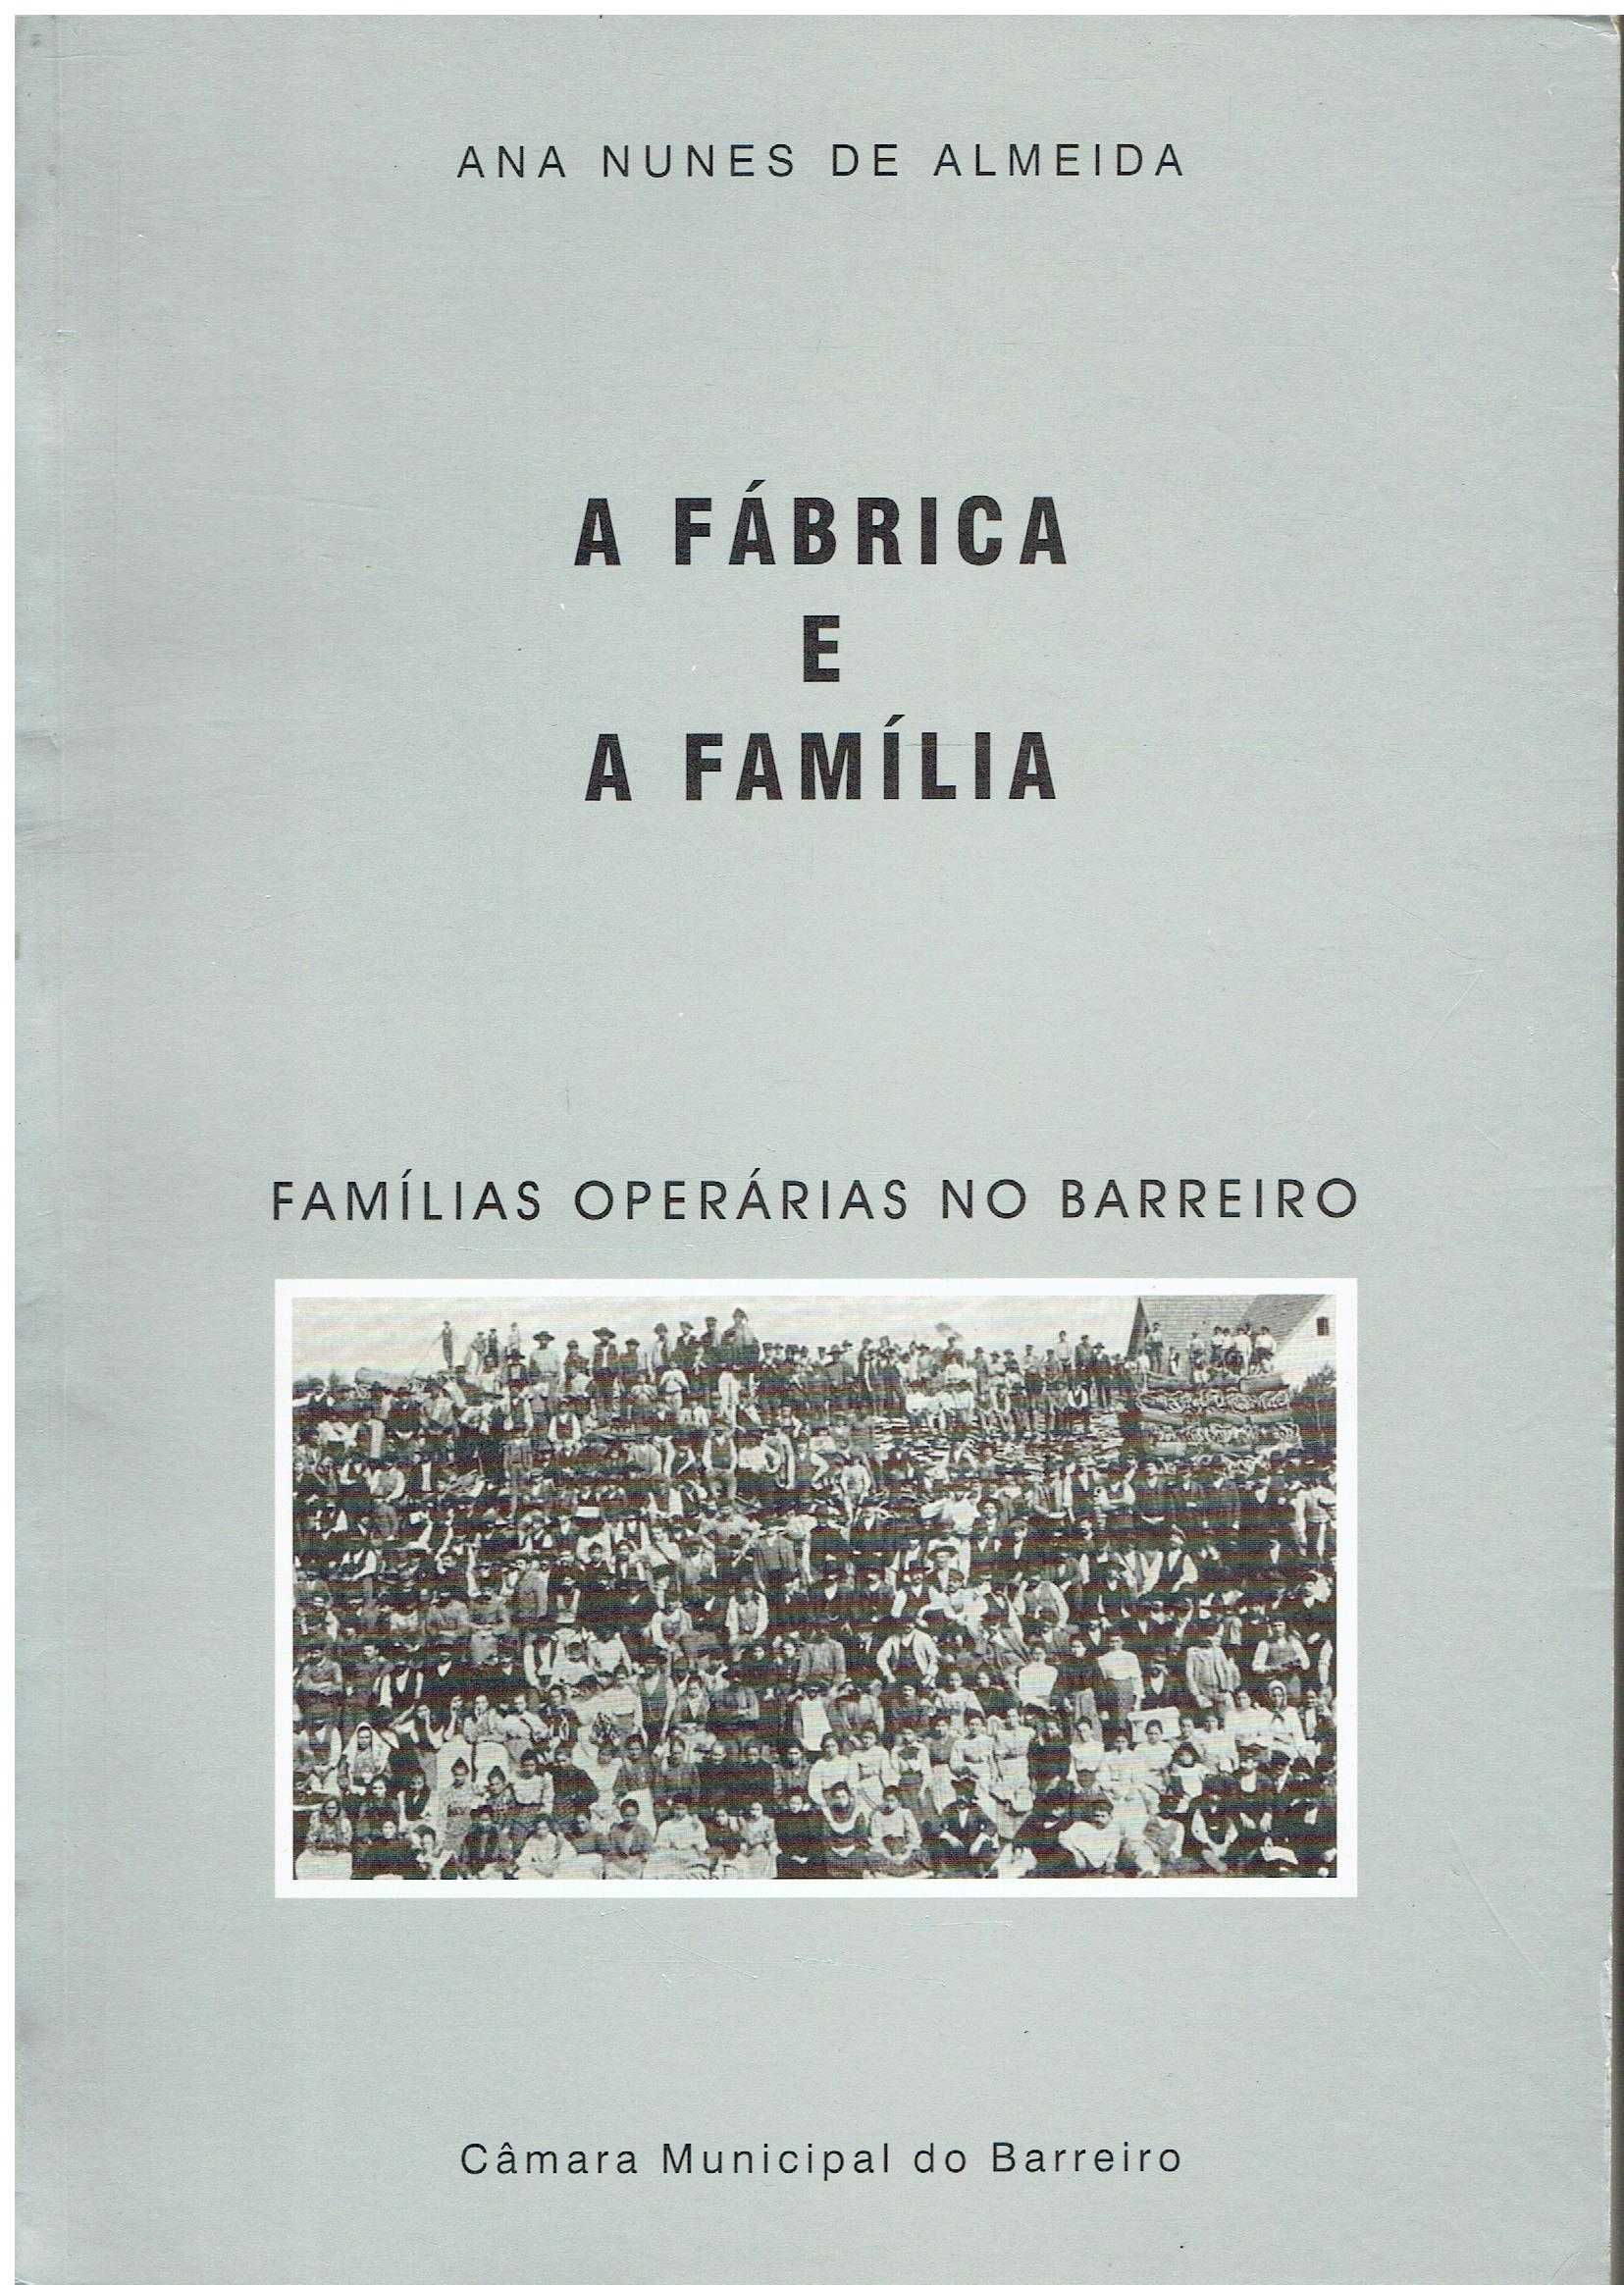 8580

A fábrica e a família : famílias operárias no Barreiro